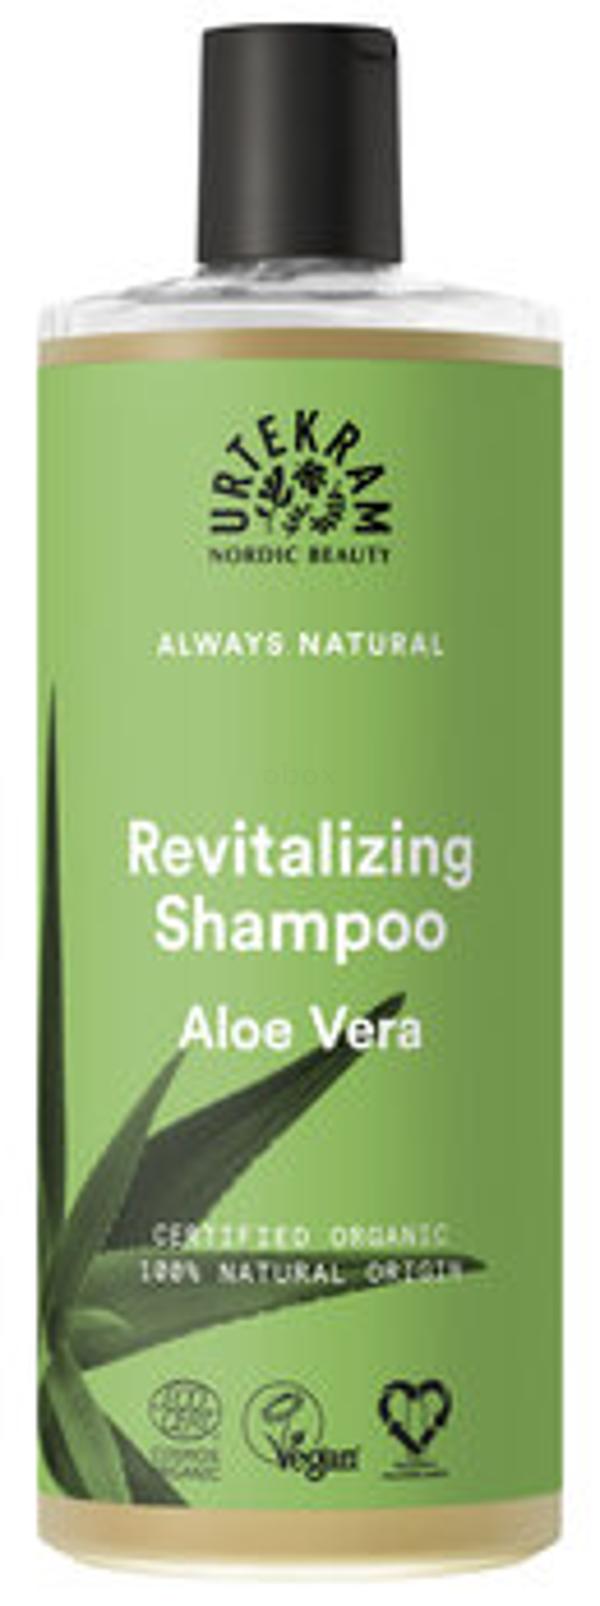 Produktfoto zu Aloe Vera Shampoo für normales Haar 500ml